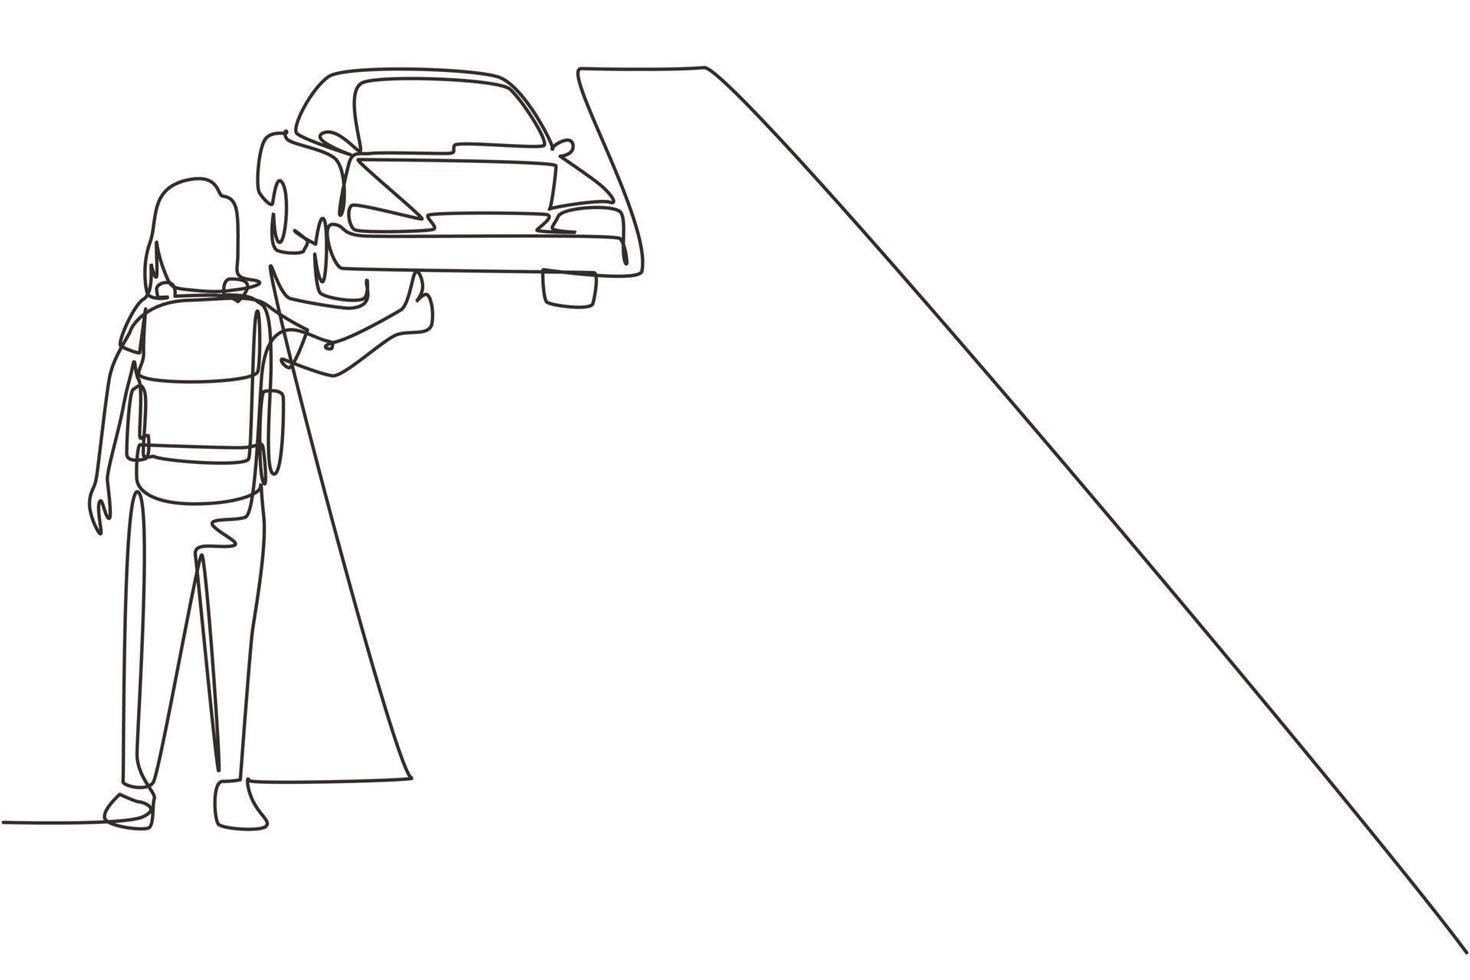 mujer de dibujo de una sola línea con mochila viajando en parada automática. coche, pulgar arriba, carretera. concepto de vacaciones y viaje para banner, sitio web. ilustración de vector gráfico de diseño de dibujo de línea continua moderna